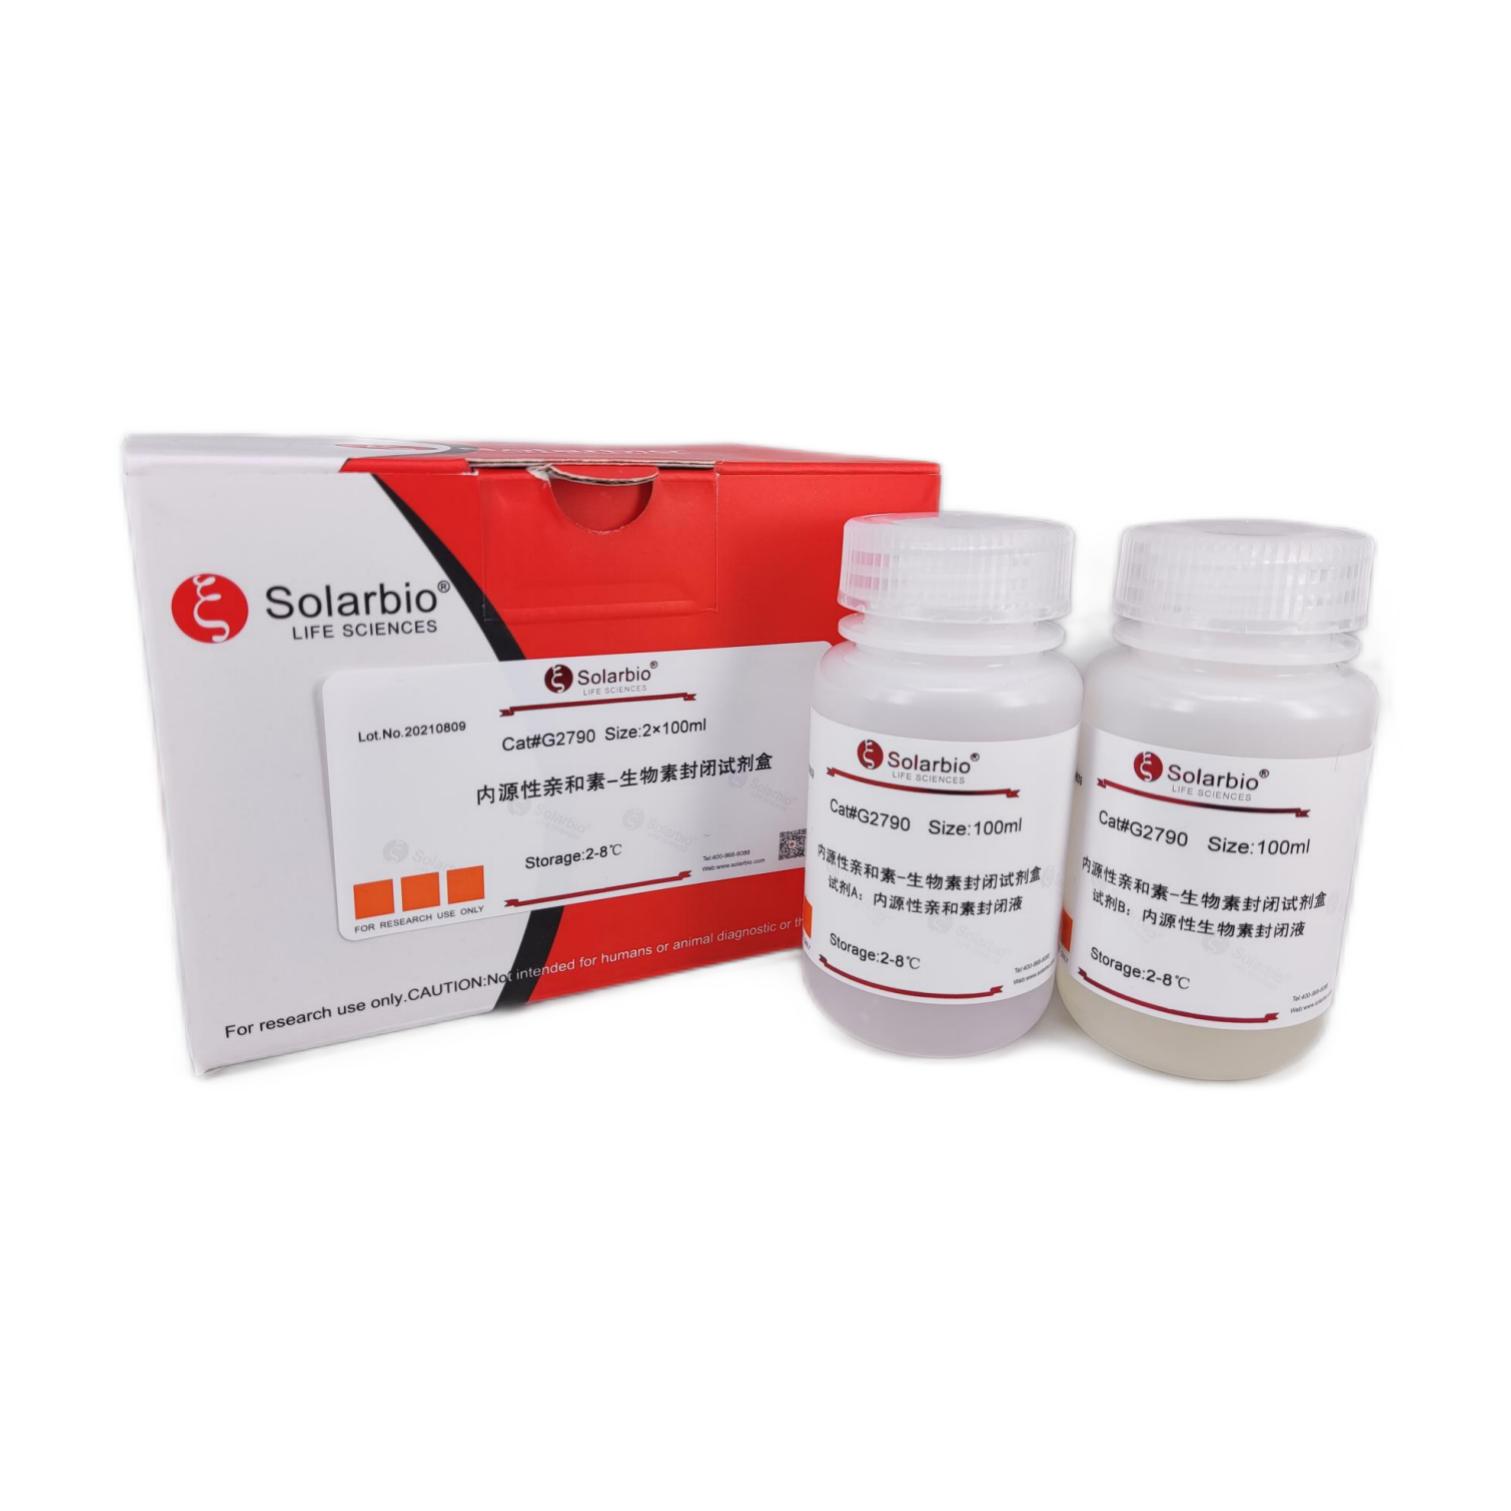 内源性亲和素-生物素封闭试剂盒,Endogenous Avidin-Biotin Blocking Kit